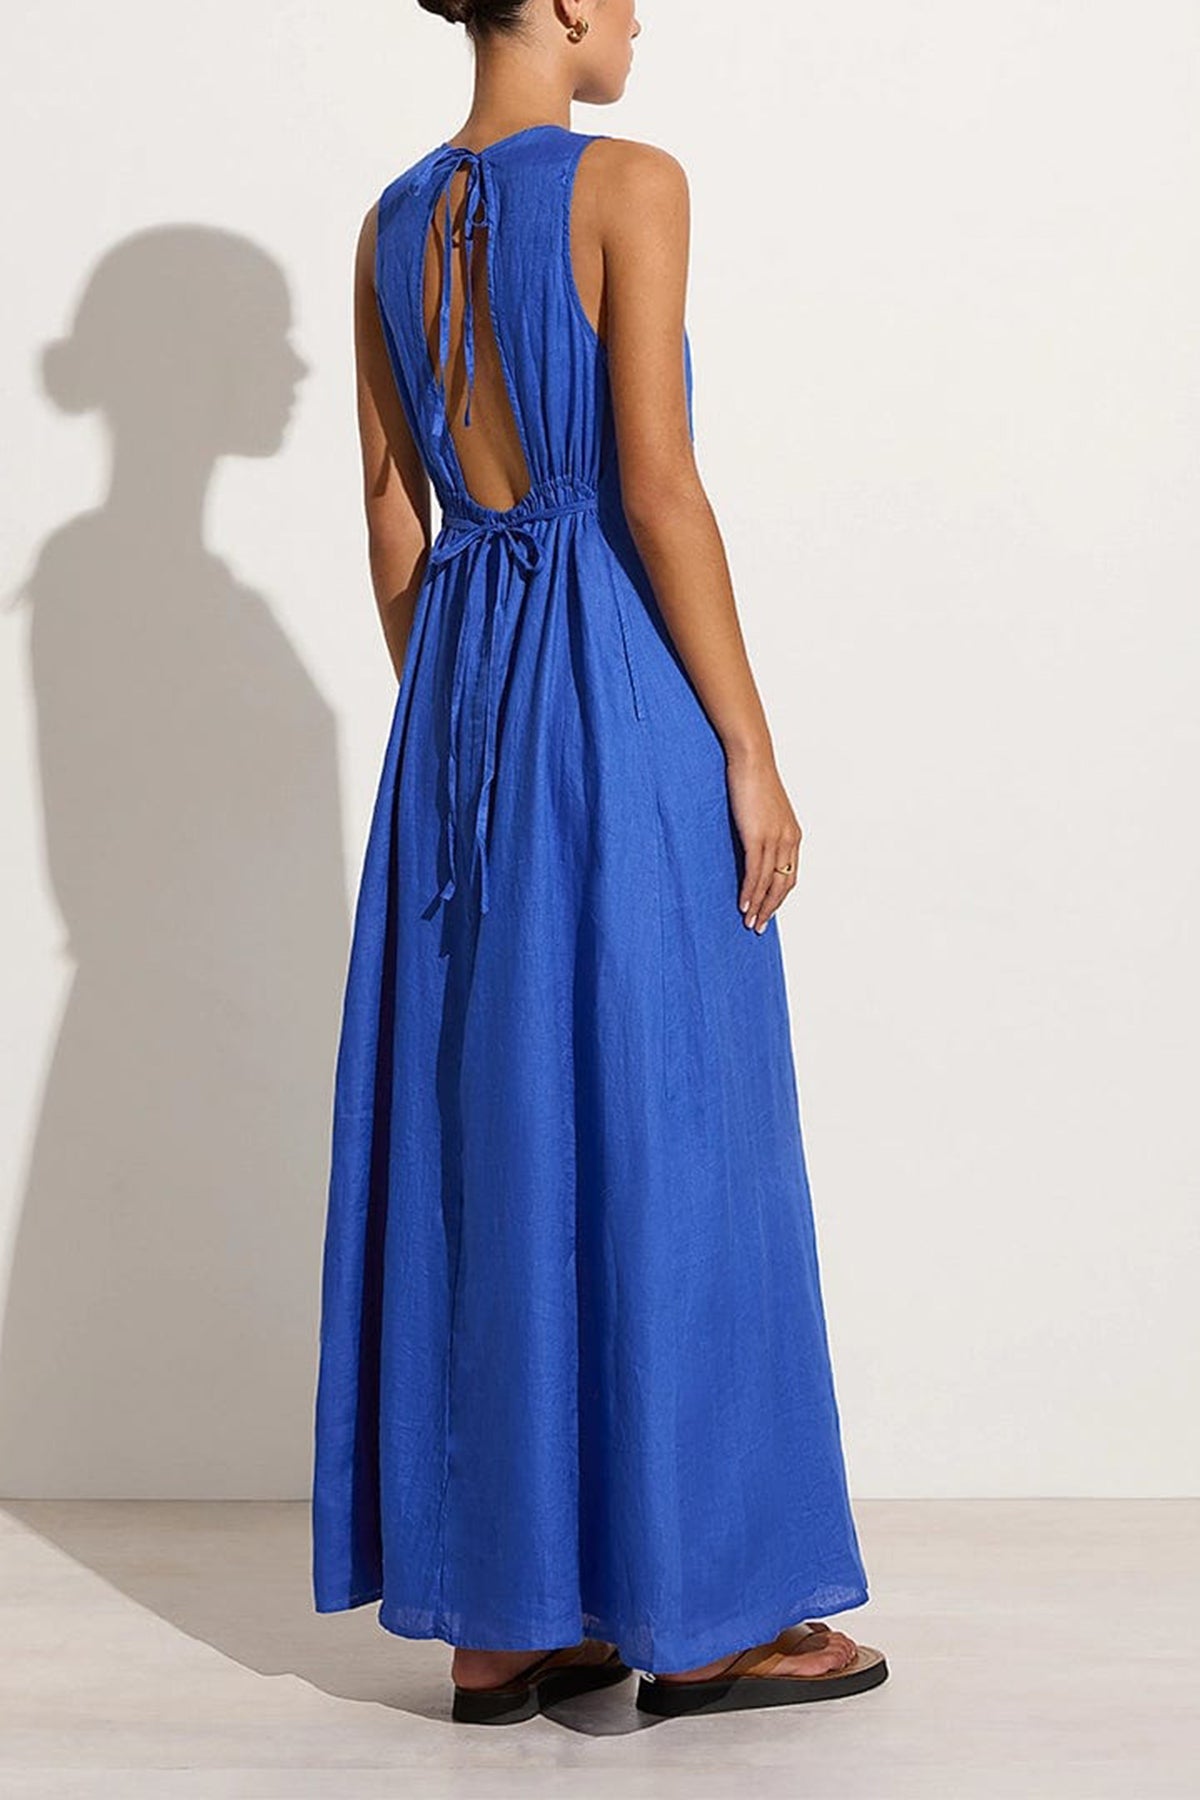 Sommar Maxi Dress in Sicilian Blue - shop-olivia.com